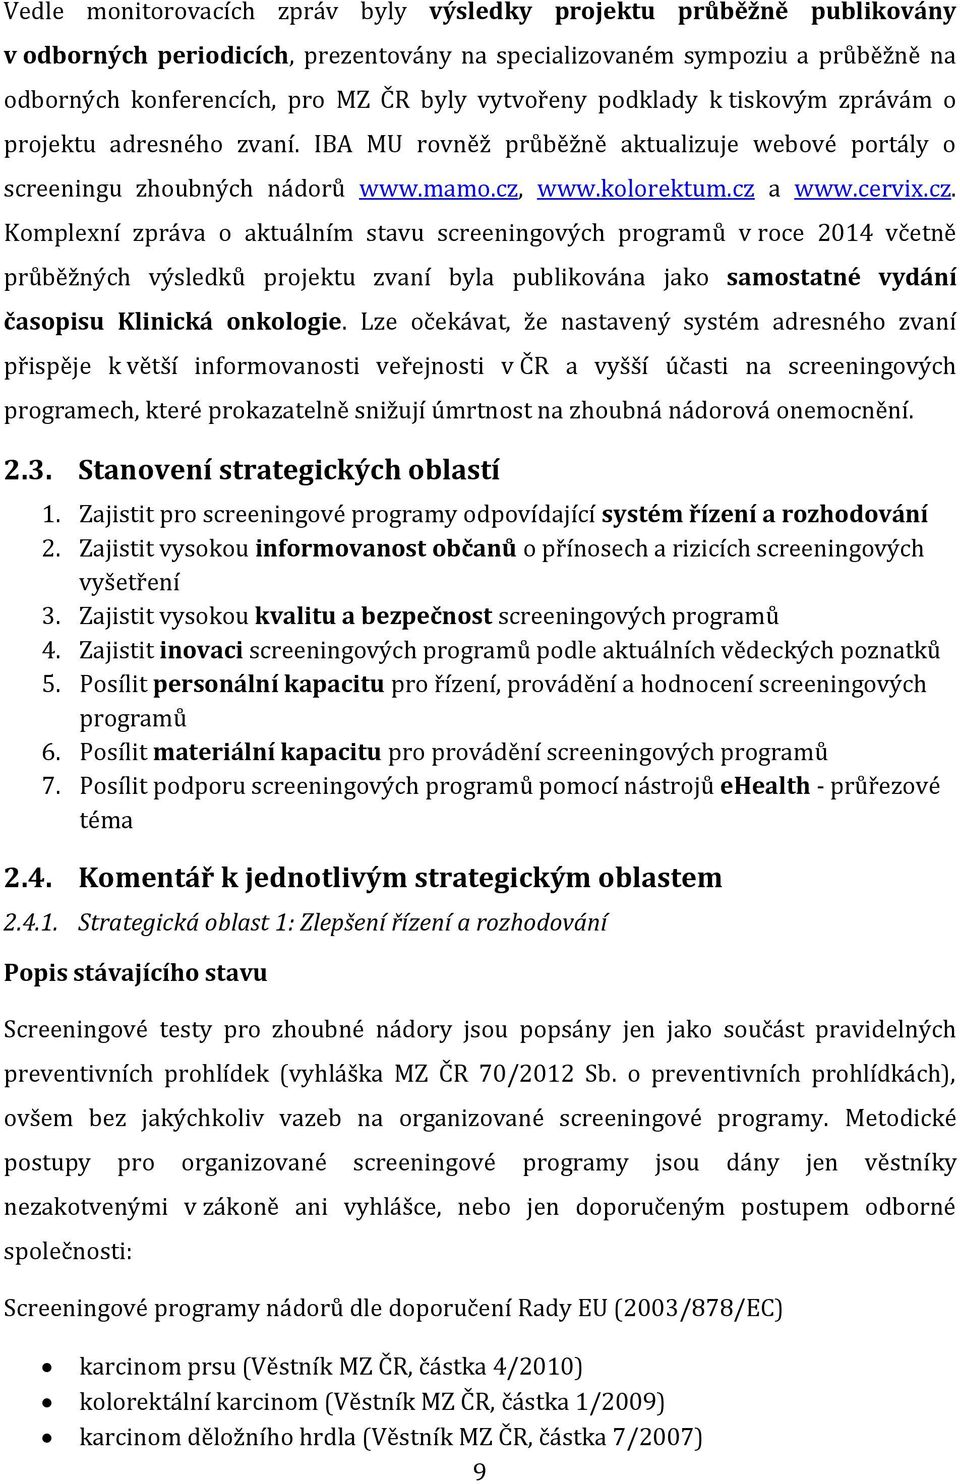 www.kolorektum.cz a www.cervix.cz. Komplexní zpráva o aktuálním stavu screeningových programů v roce 2014 včetně průběžných výsledků projektu zvaní byla publikována jako samostatné vydání časopisu Klinická onkologie.